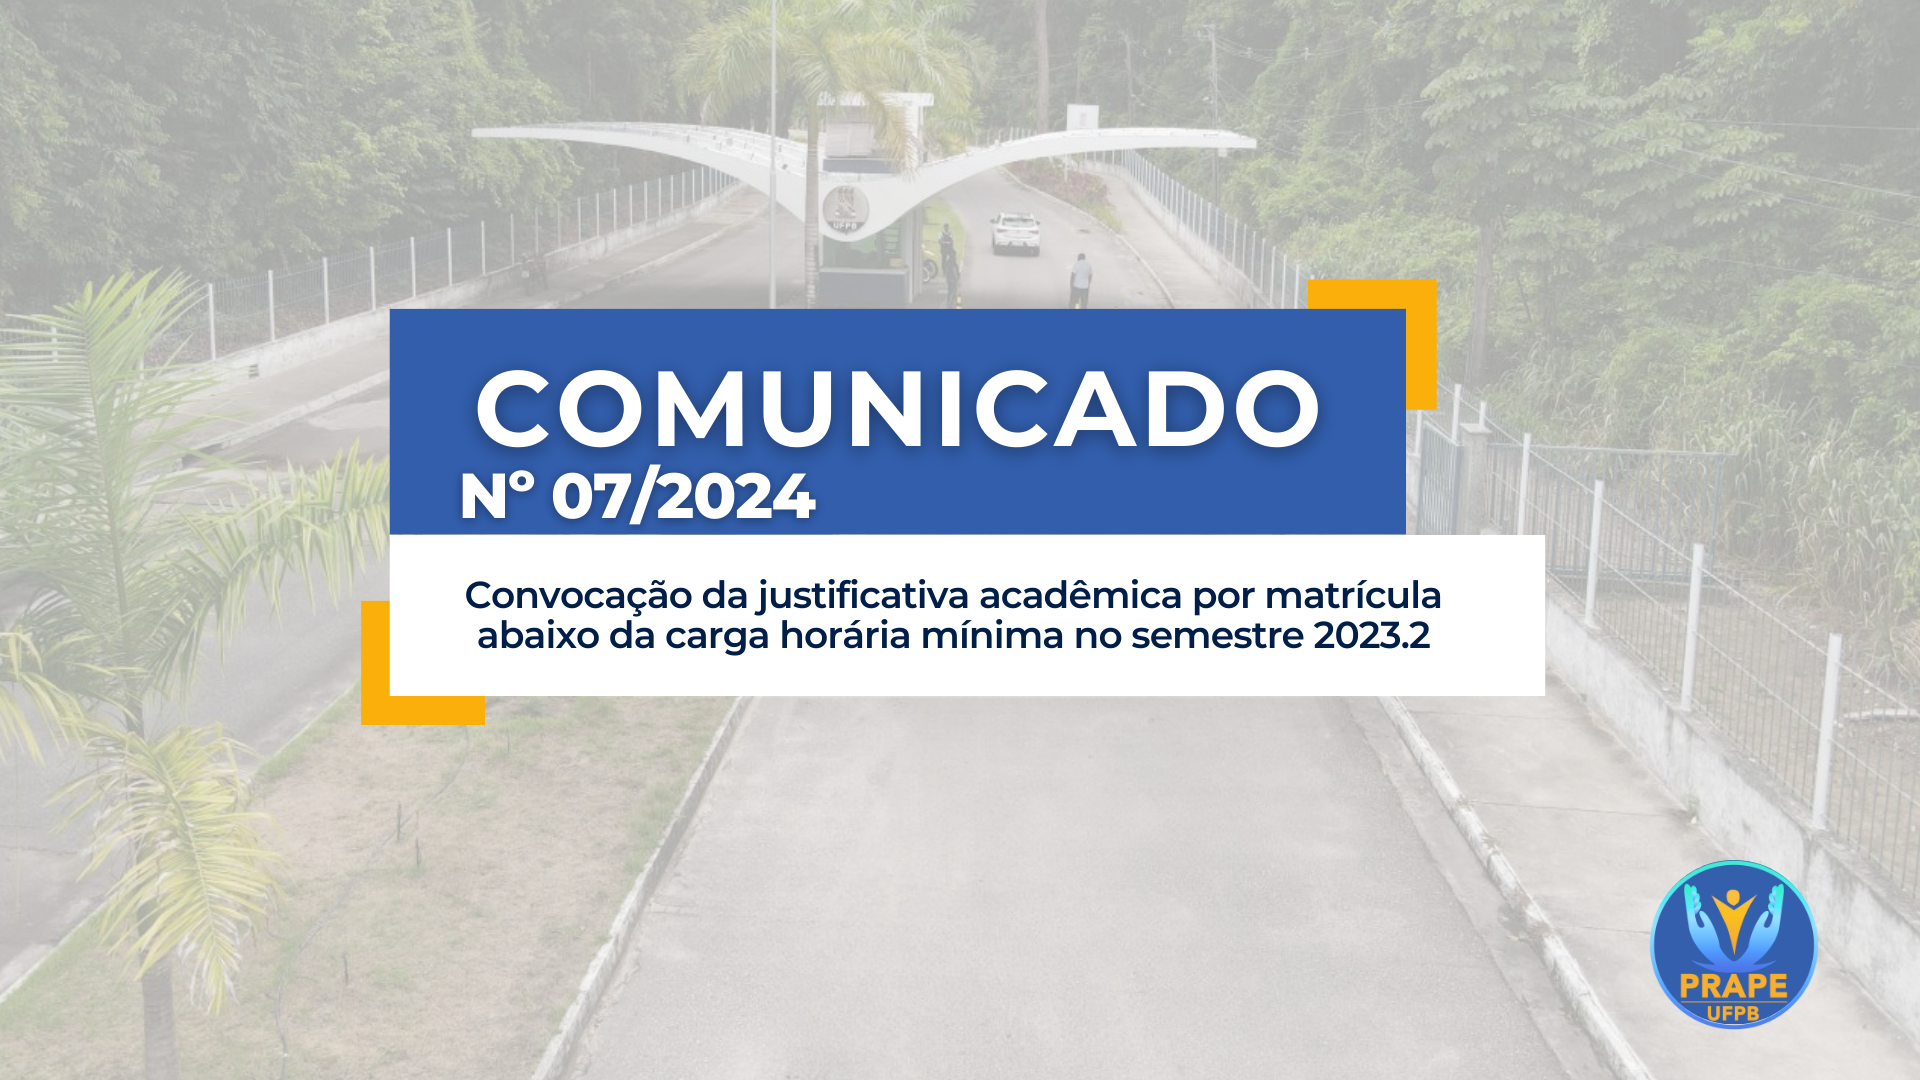 Comunicado 07/2023 - Convocação da justificativa acadêmica por matrícula abaixo da carga horária mínima no semestre 2023.2